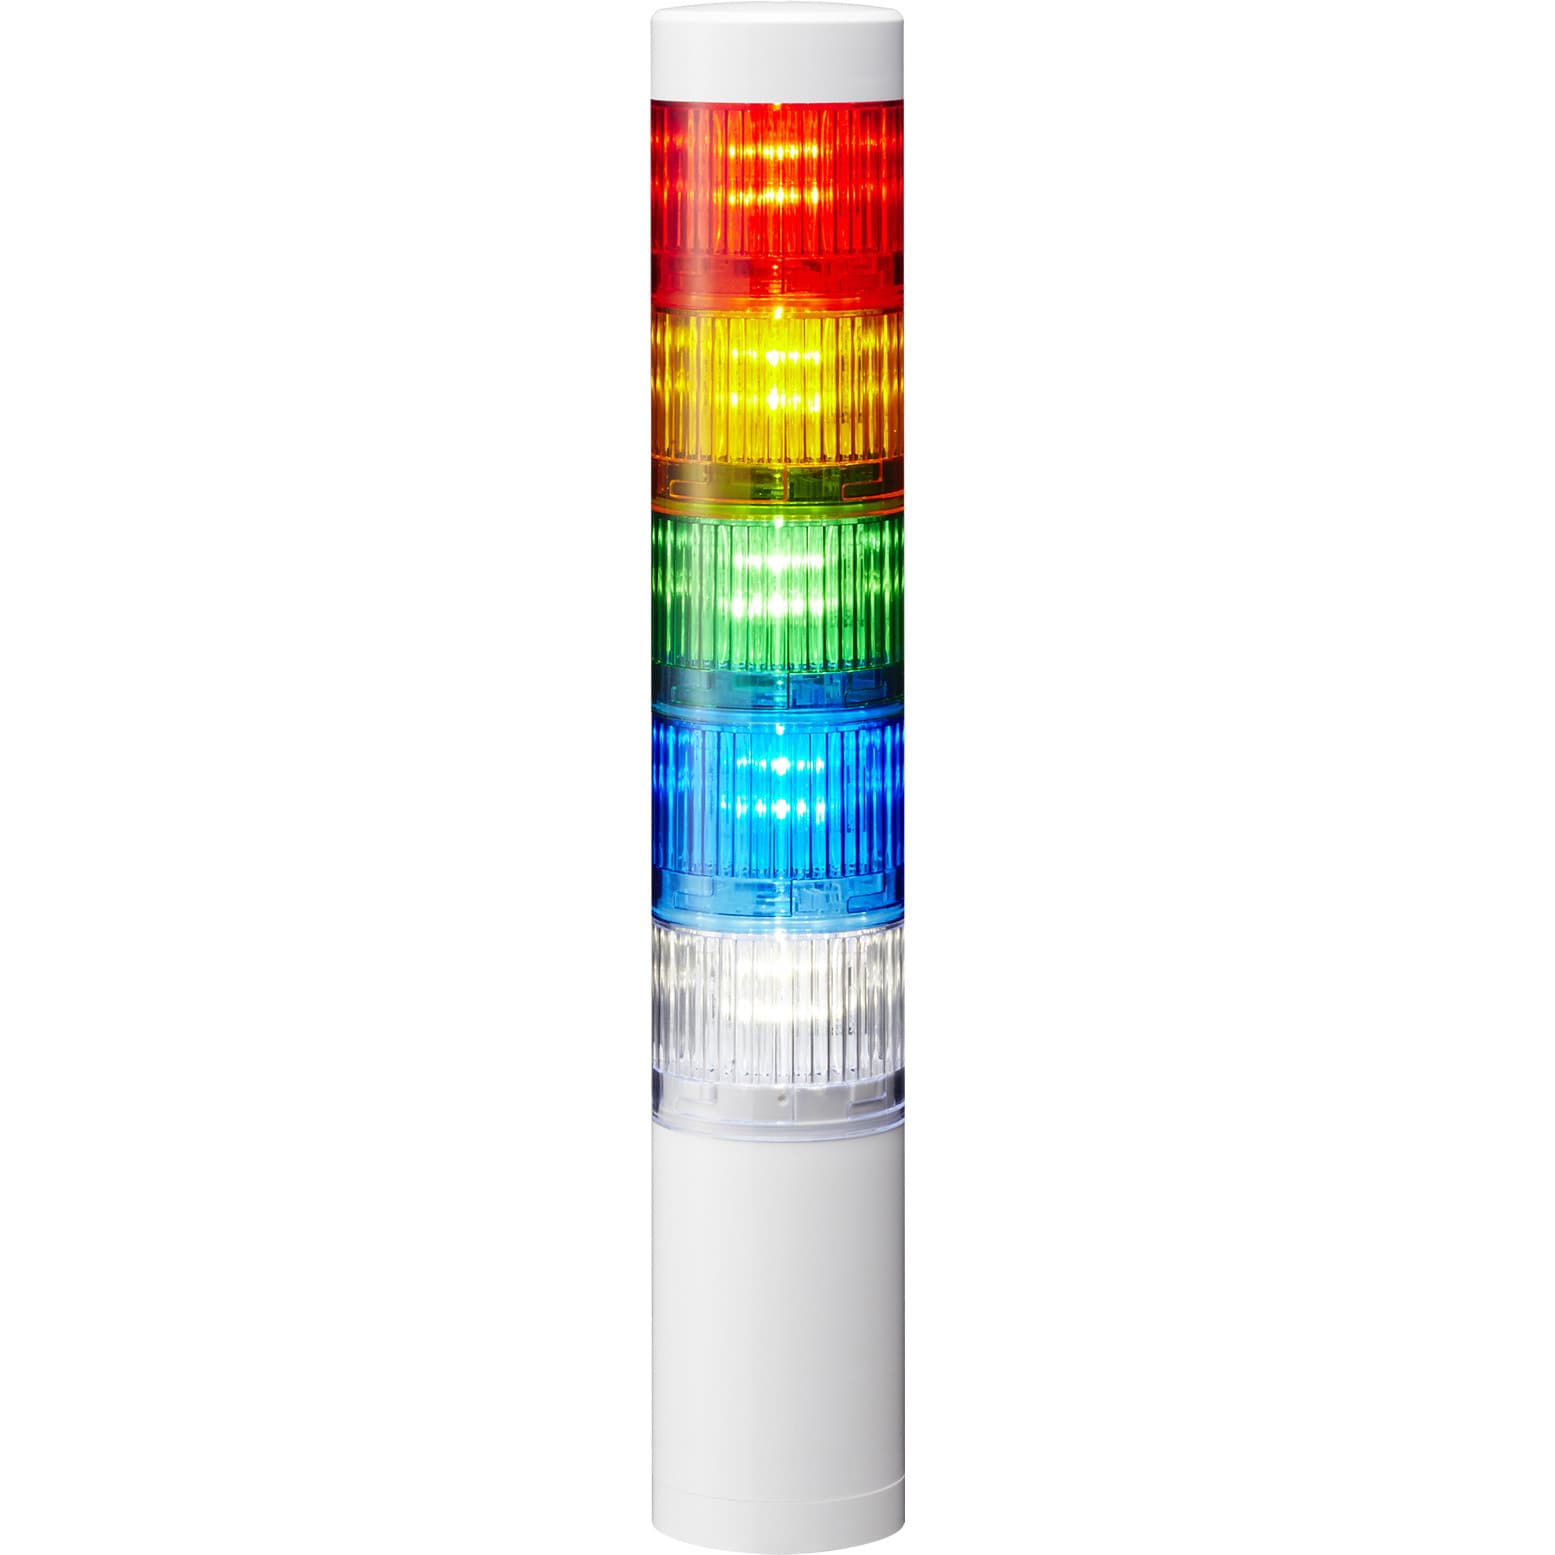 LR5-502WJNW-RYGBC 積層信号灯 シグナル・タワー Φ50 LR5シリーズ 1個